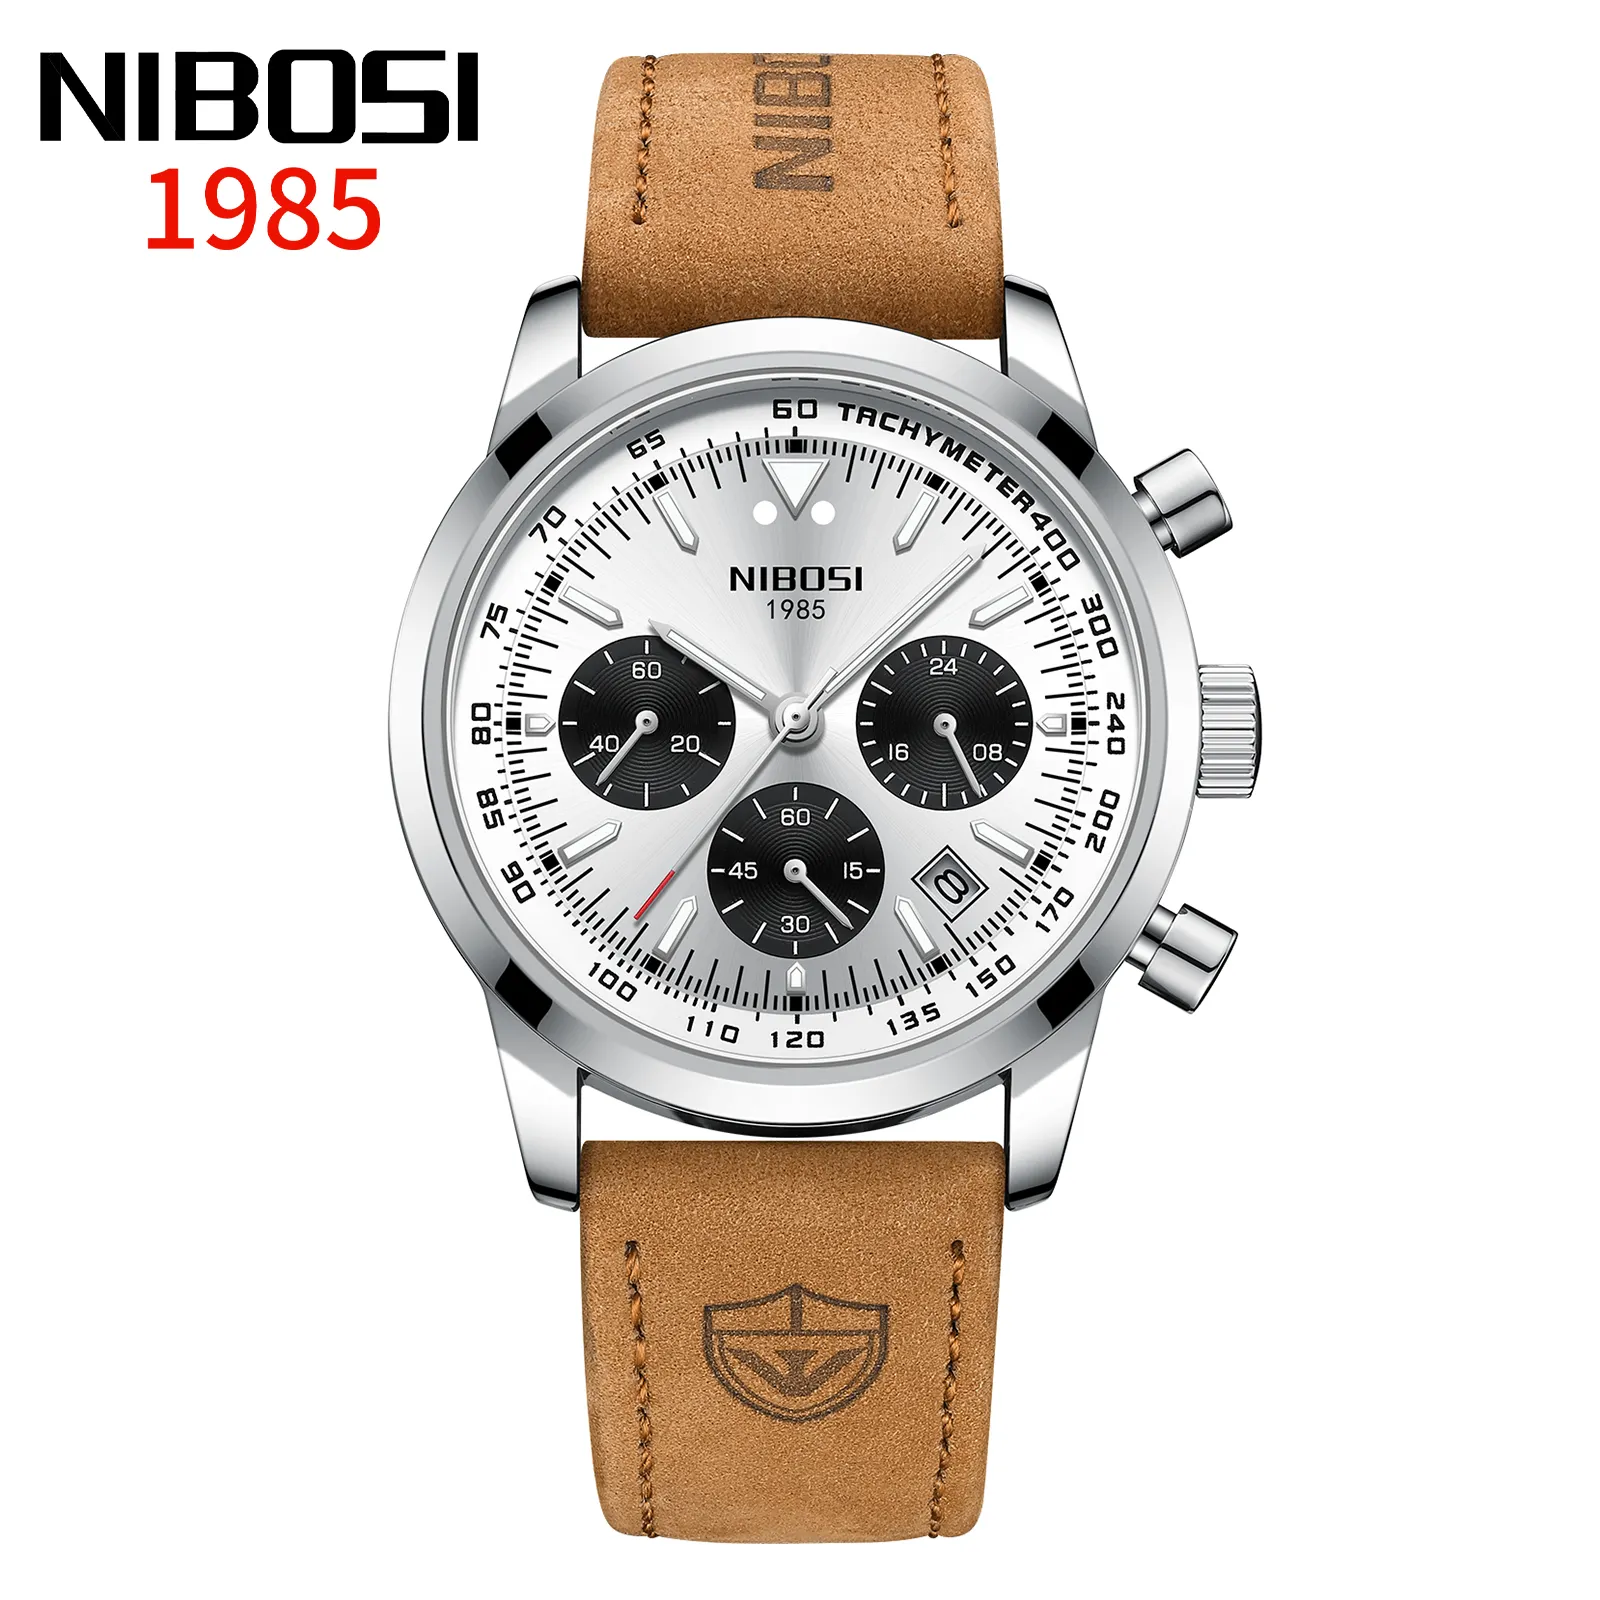 Niboti 2609 Novos Homens Relógios Quartz Chronograph Relógios Genuine Leather Strap Band Quartz Relógios De Pulso para Homens